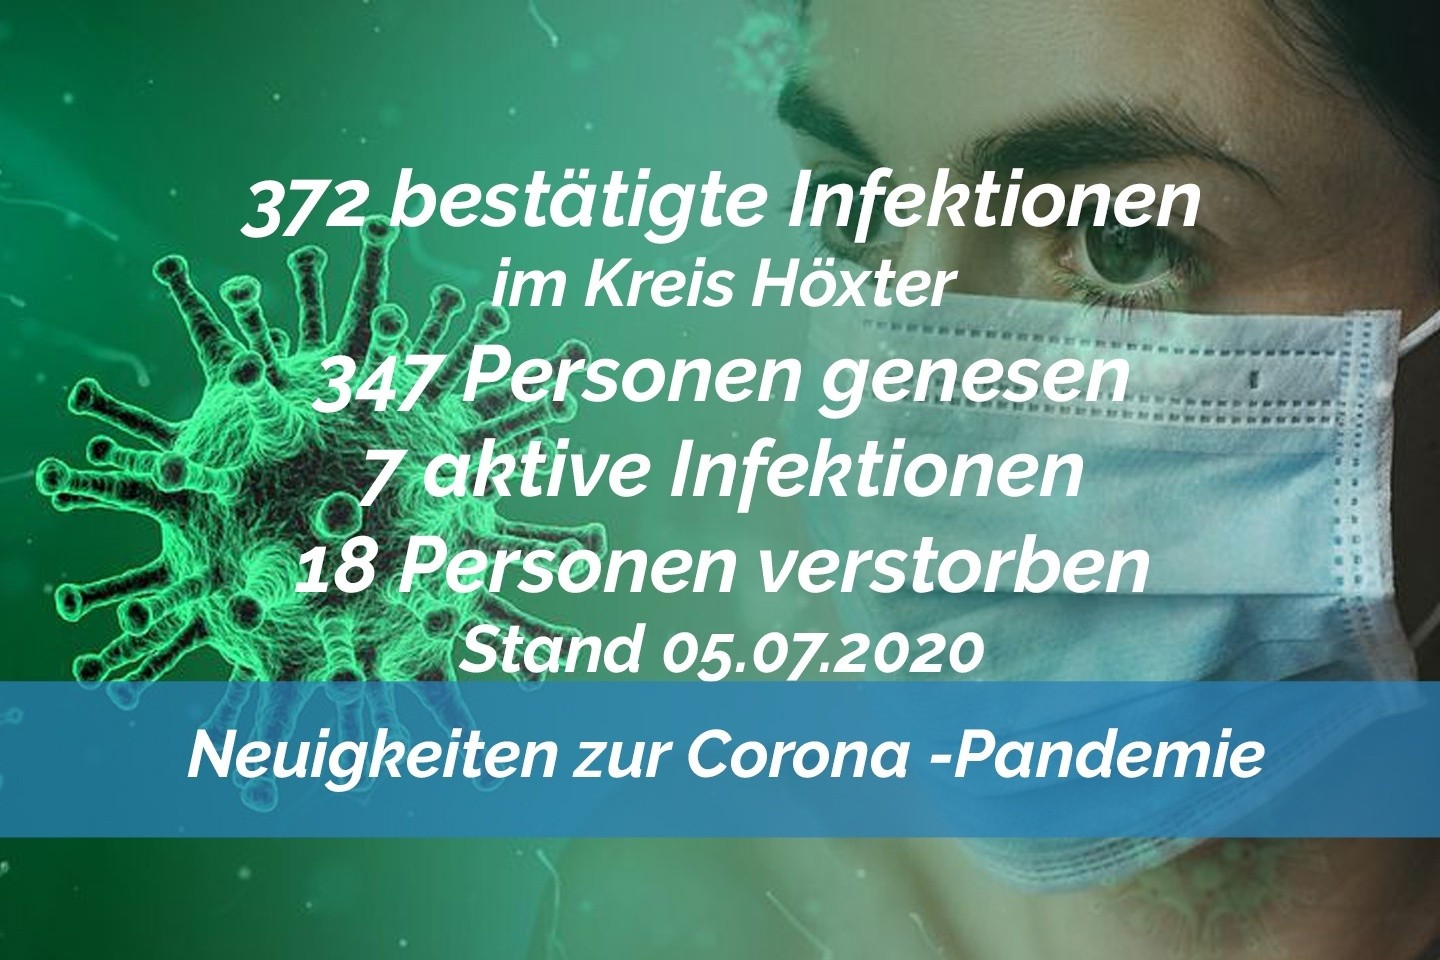 Update vom 05. Juli: 372 bestätigte Infektionen mit dem neuen Coronavirus im Kreis Höxter